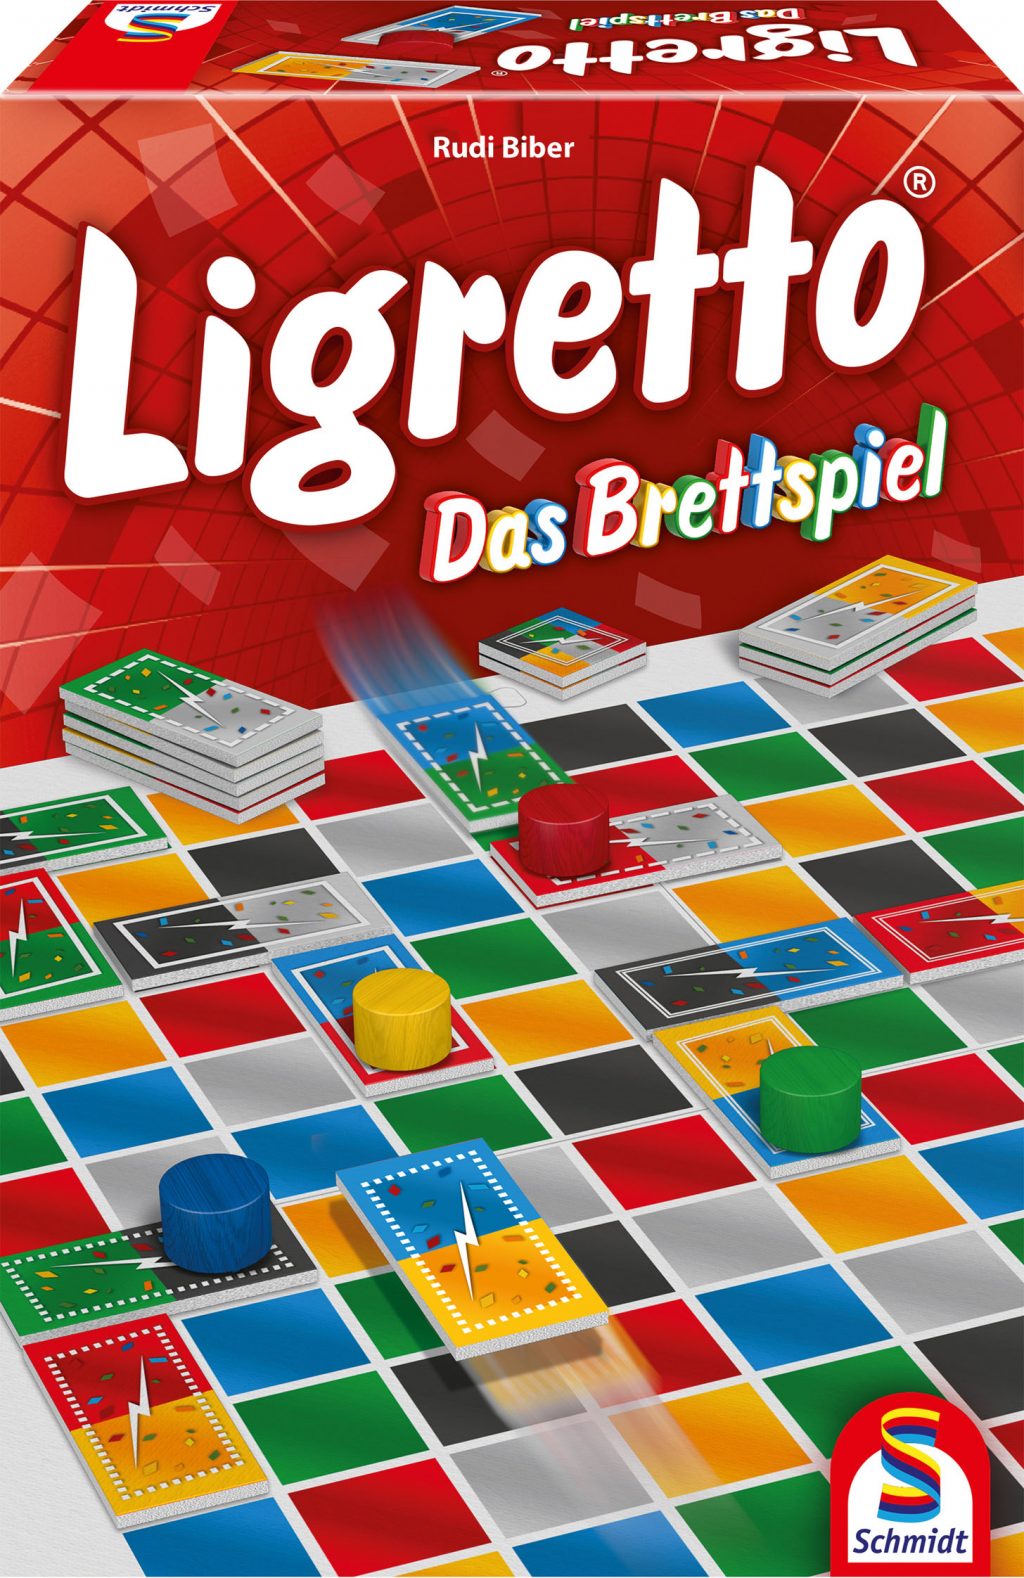 LigrettoBrettspiel_V3_025